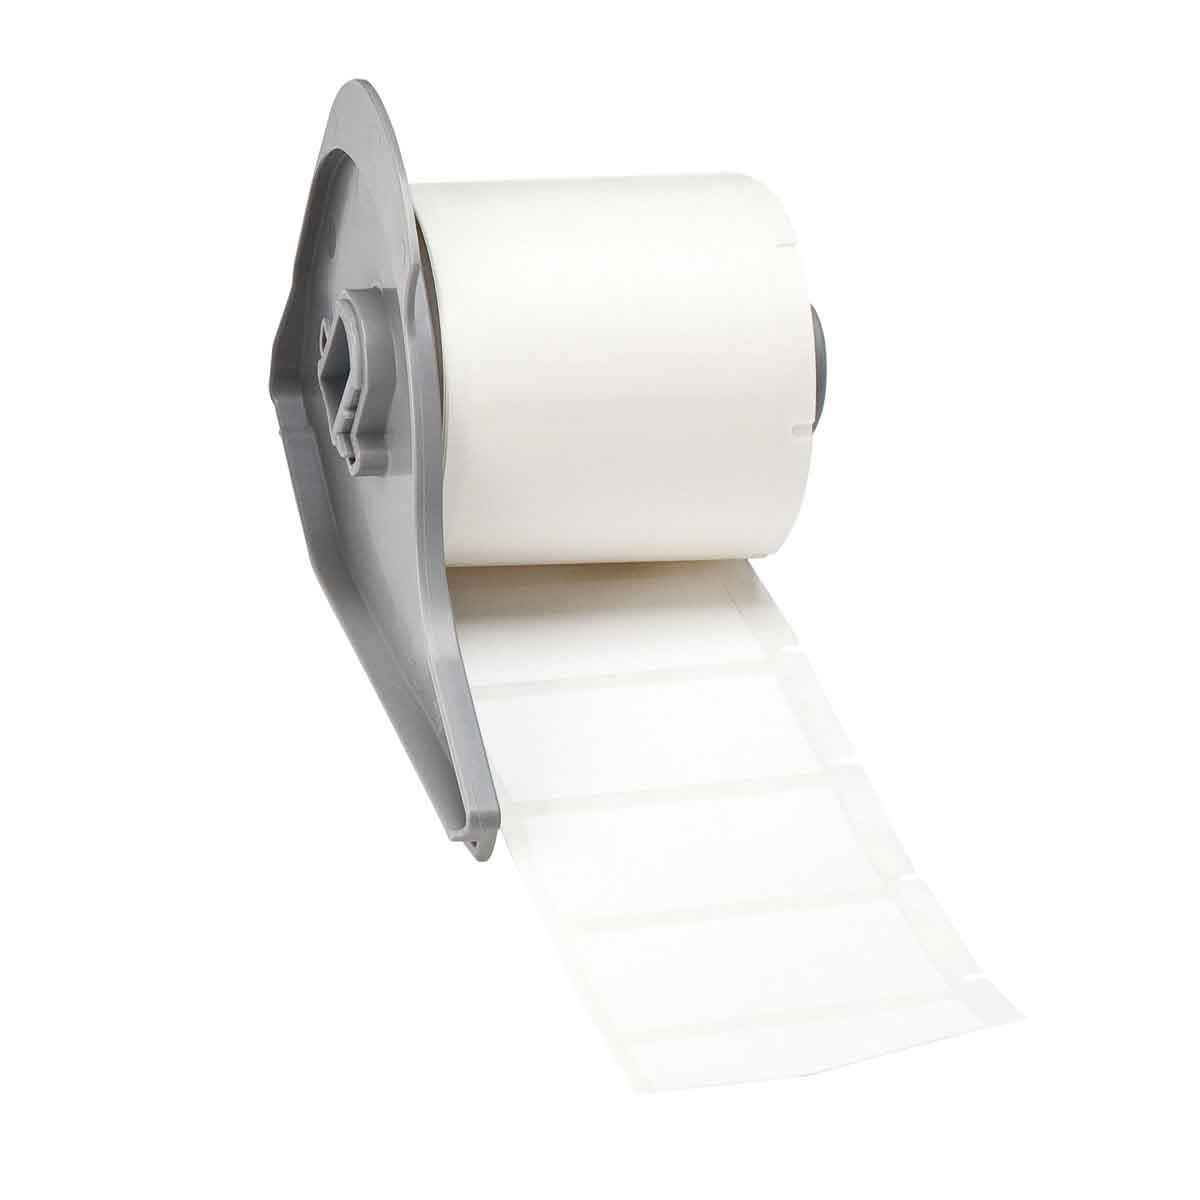 Etiquettes en polyester blanc mat pour codes-barres pour étiqueteuse BMP71